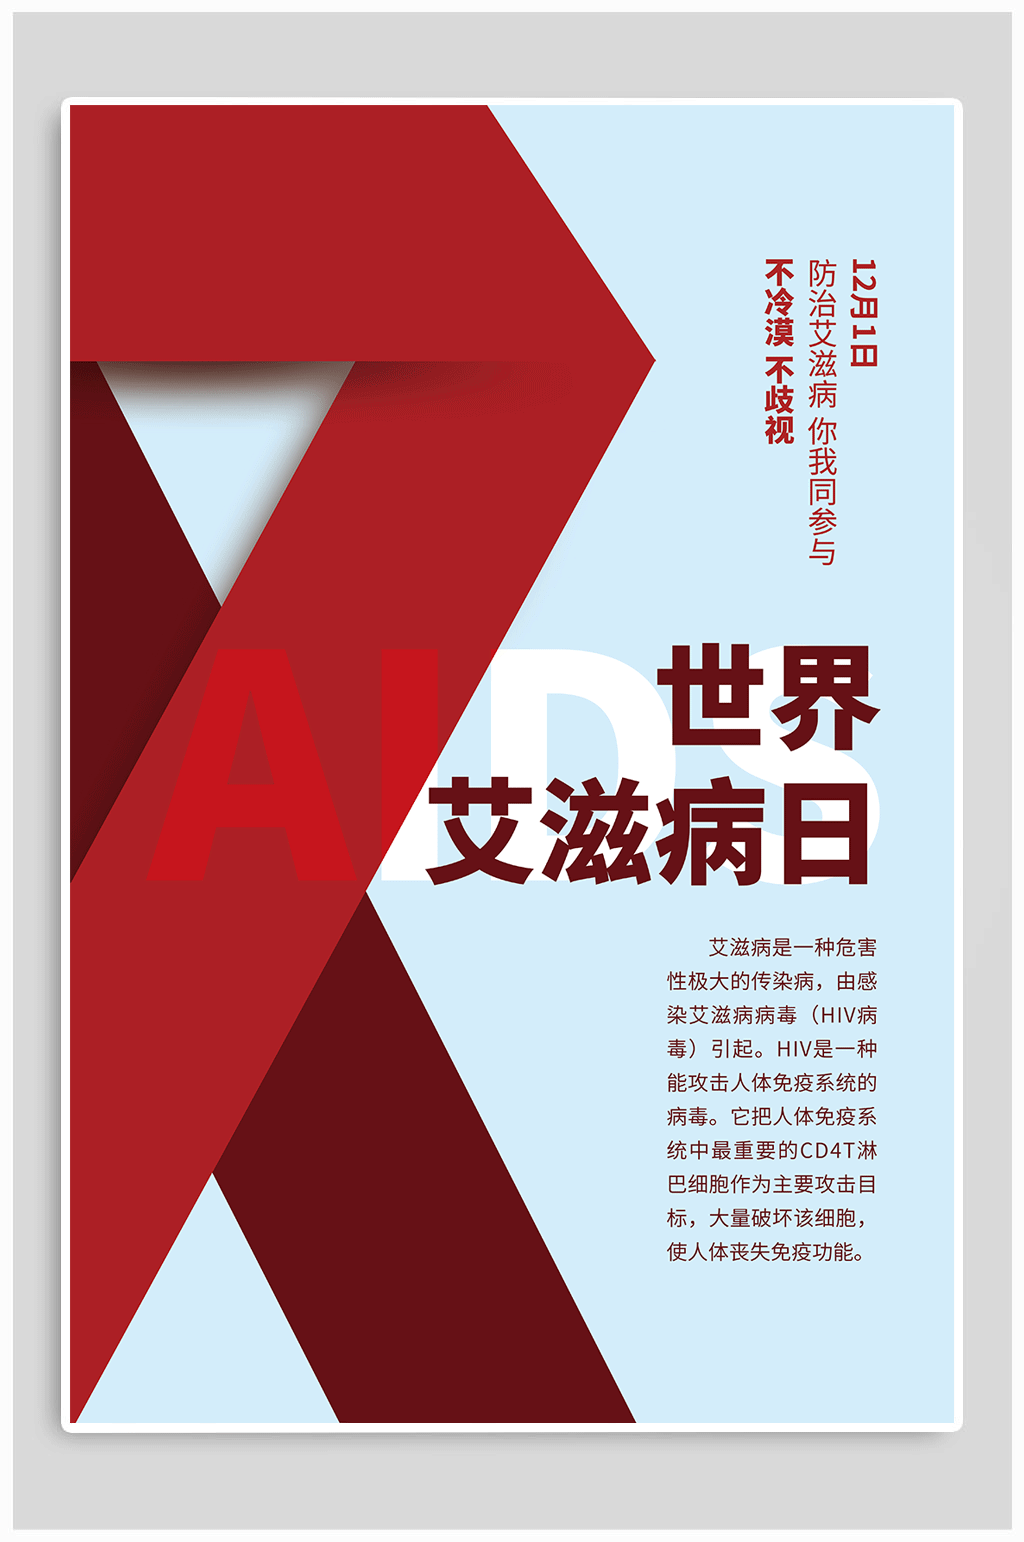 世界艾滋病日宣传海报素材